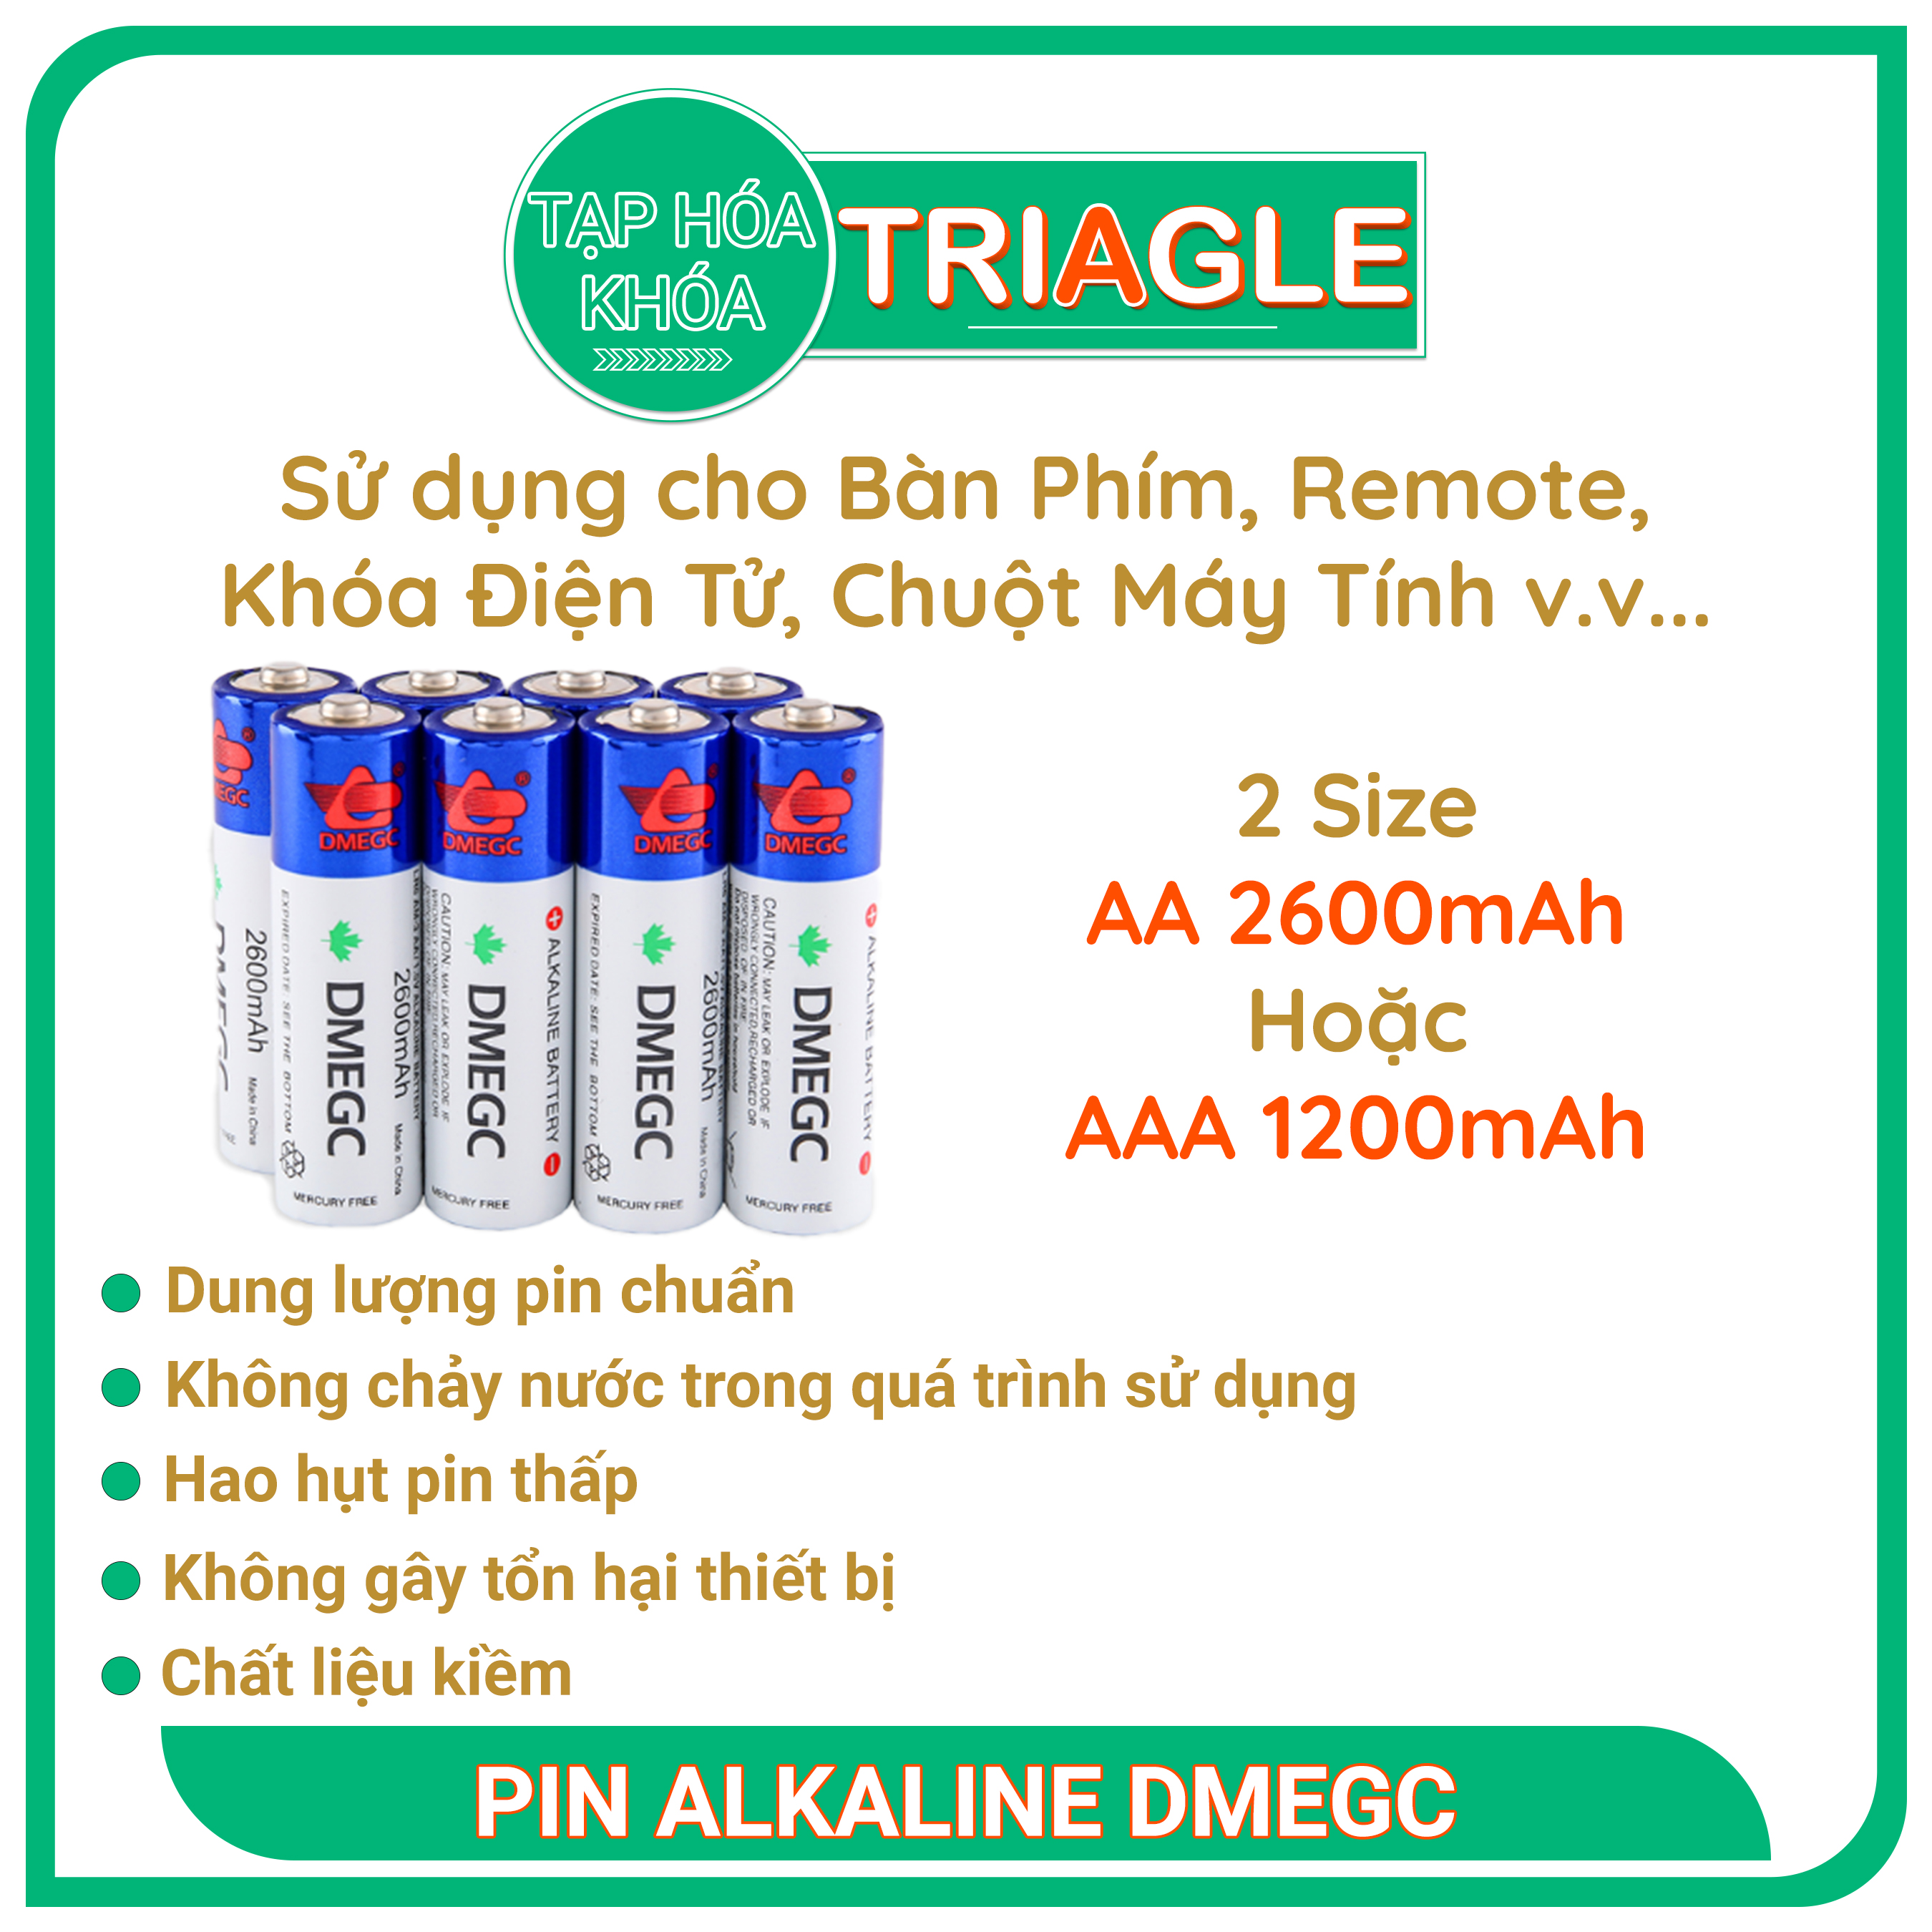 Pin Alkaline DMEGC - Dung Lượng Chuẩn - Bàn phím, chuột, đồng hồ